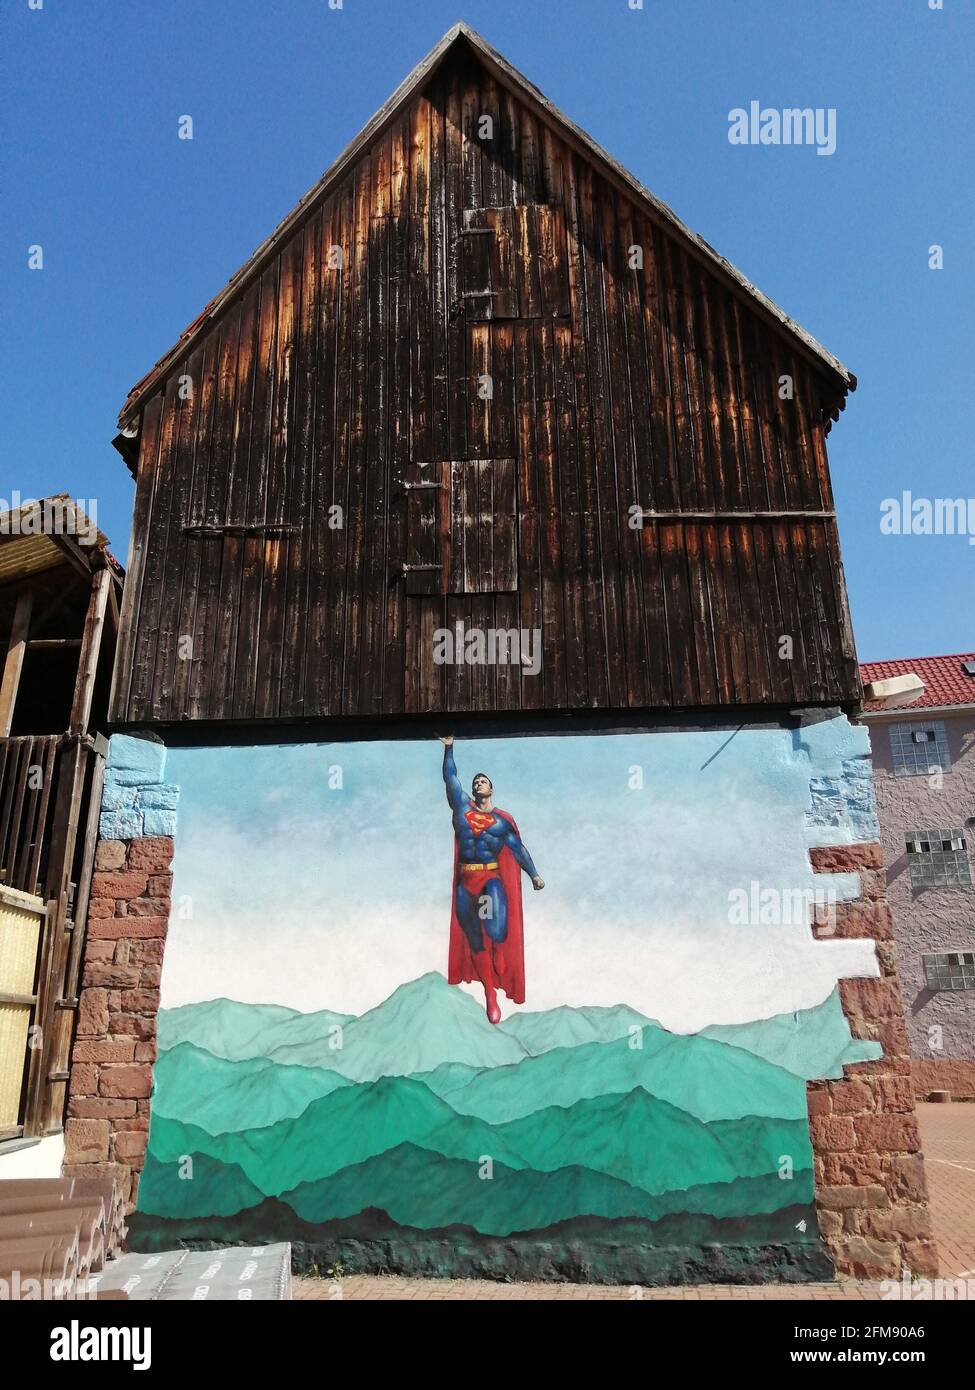 WESTON-SUPER-MARE, Großbritannien: Superman scheint ein Haus zu heben. DIESER BRITISCHE Graffiti-Künstler hat eine skurrile Serie von kniffligen interaktiven Straßen geschaffen Stockfoto